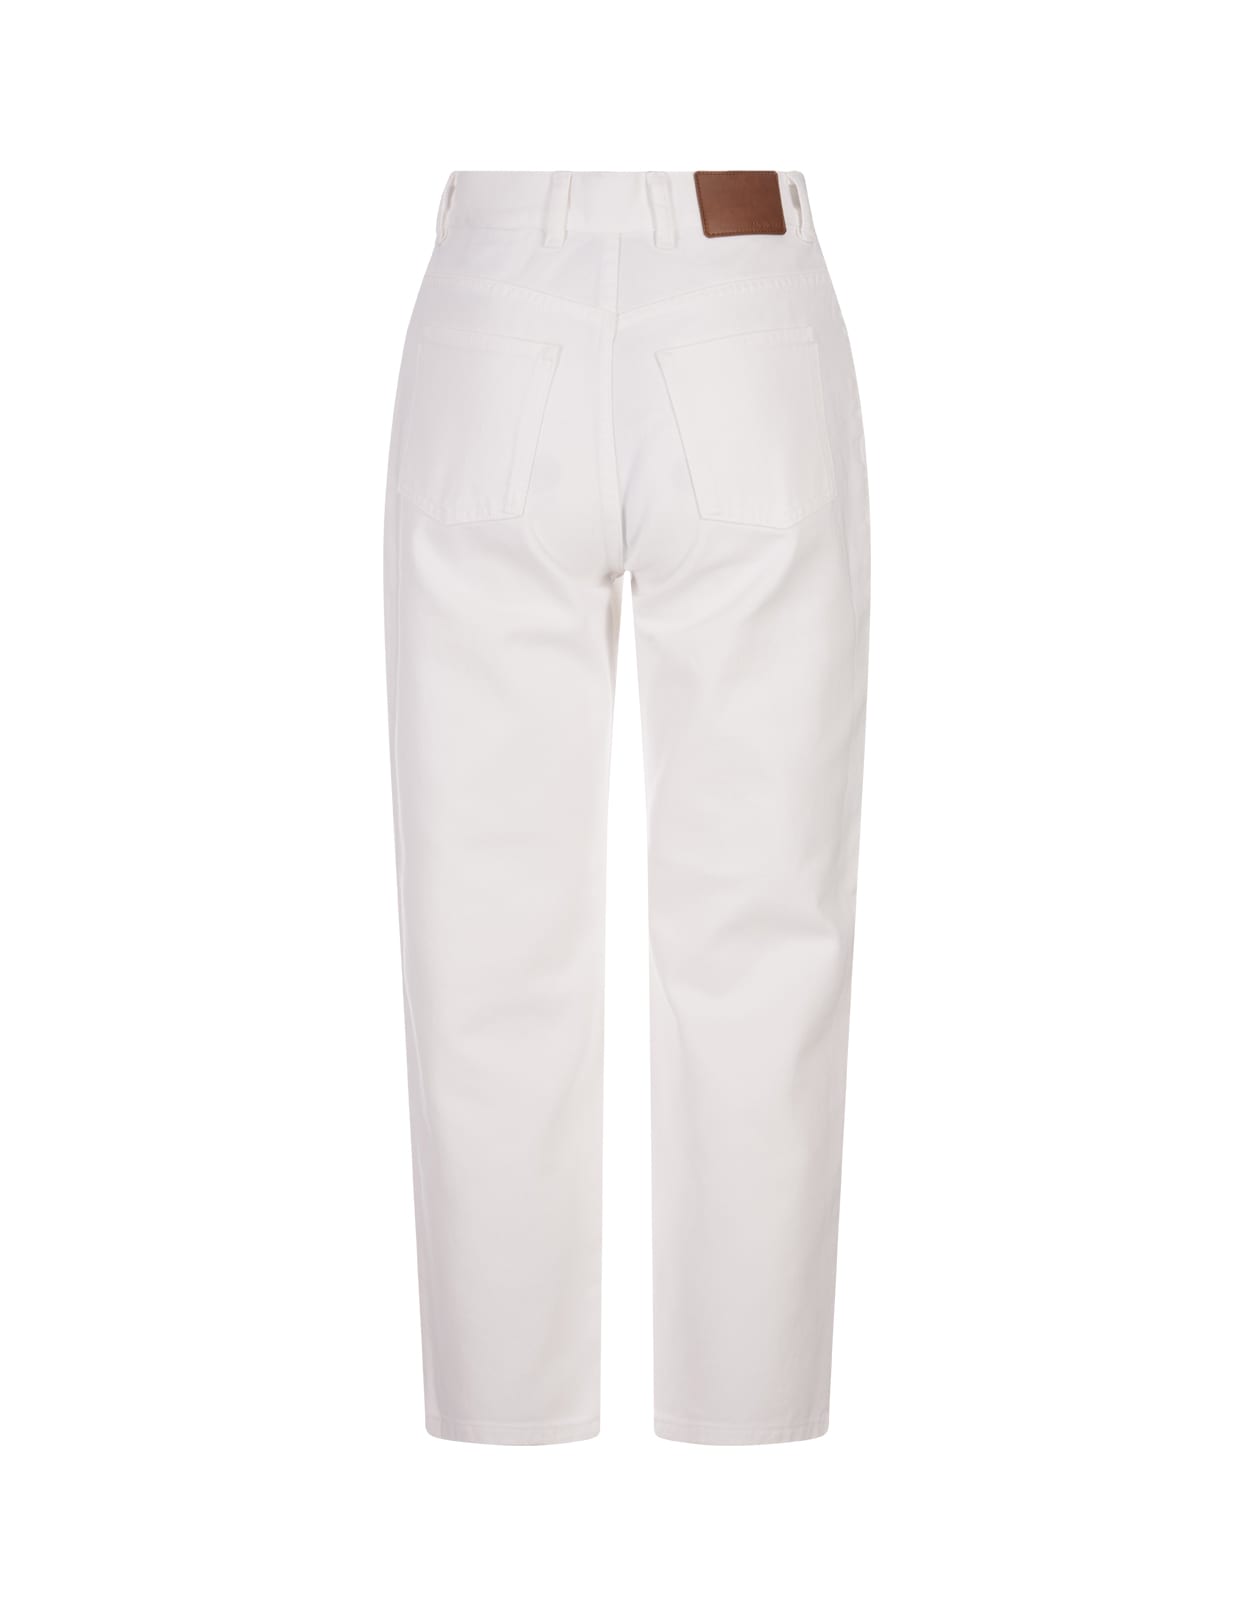 Shop Moncler White Bull Vintage Cotton Short Jeans